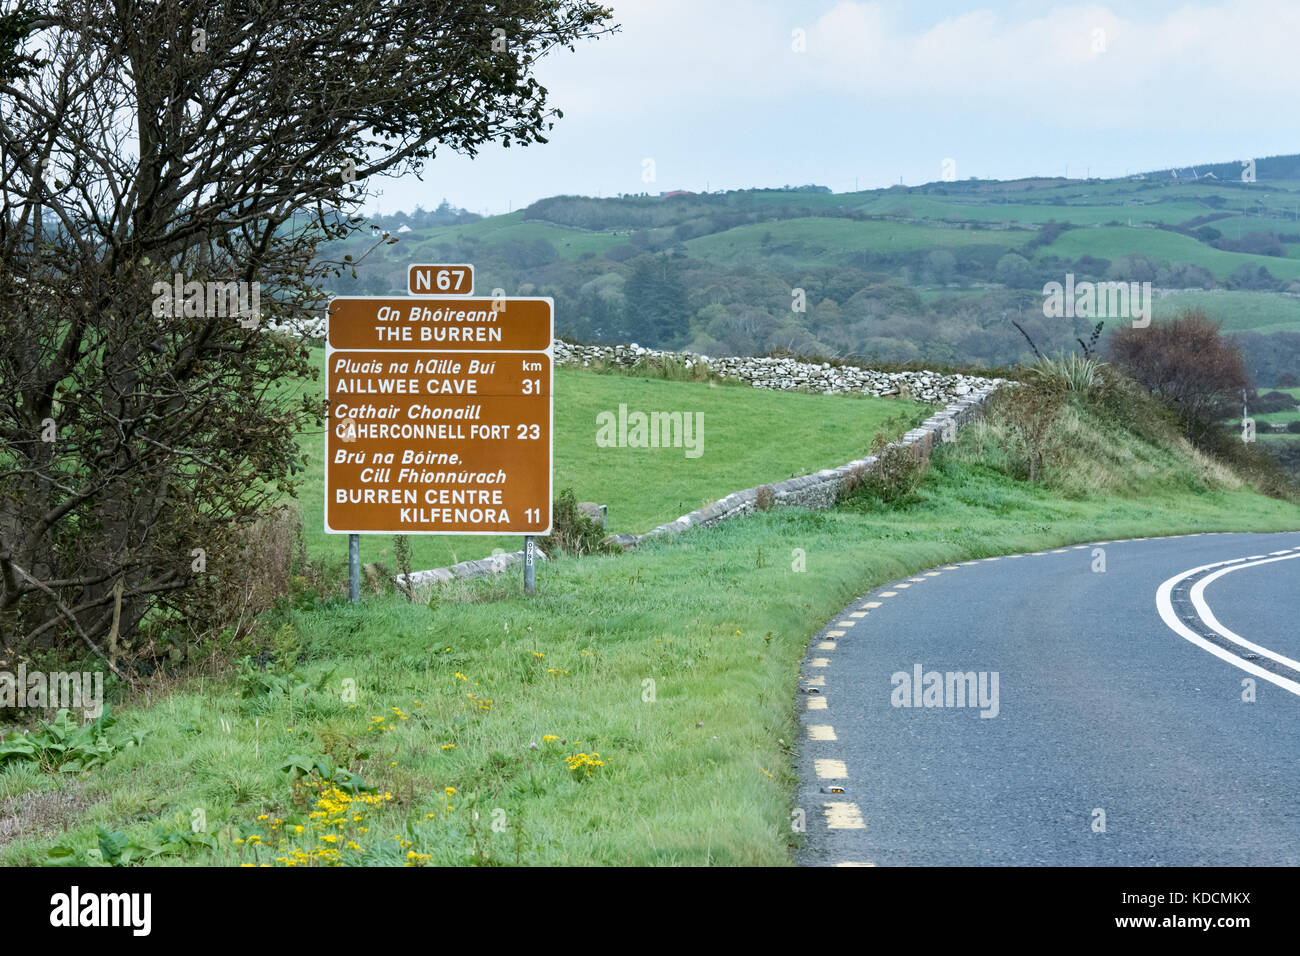 Route à travers le Burren (comté de Clare, Irlande) avec panneau pour diverses destinations touristiques. Banque D'Images